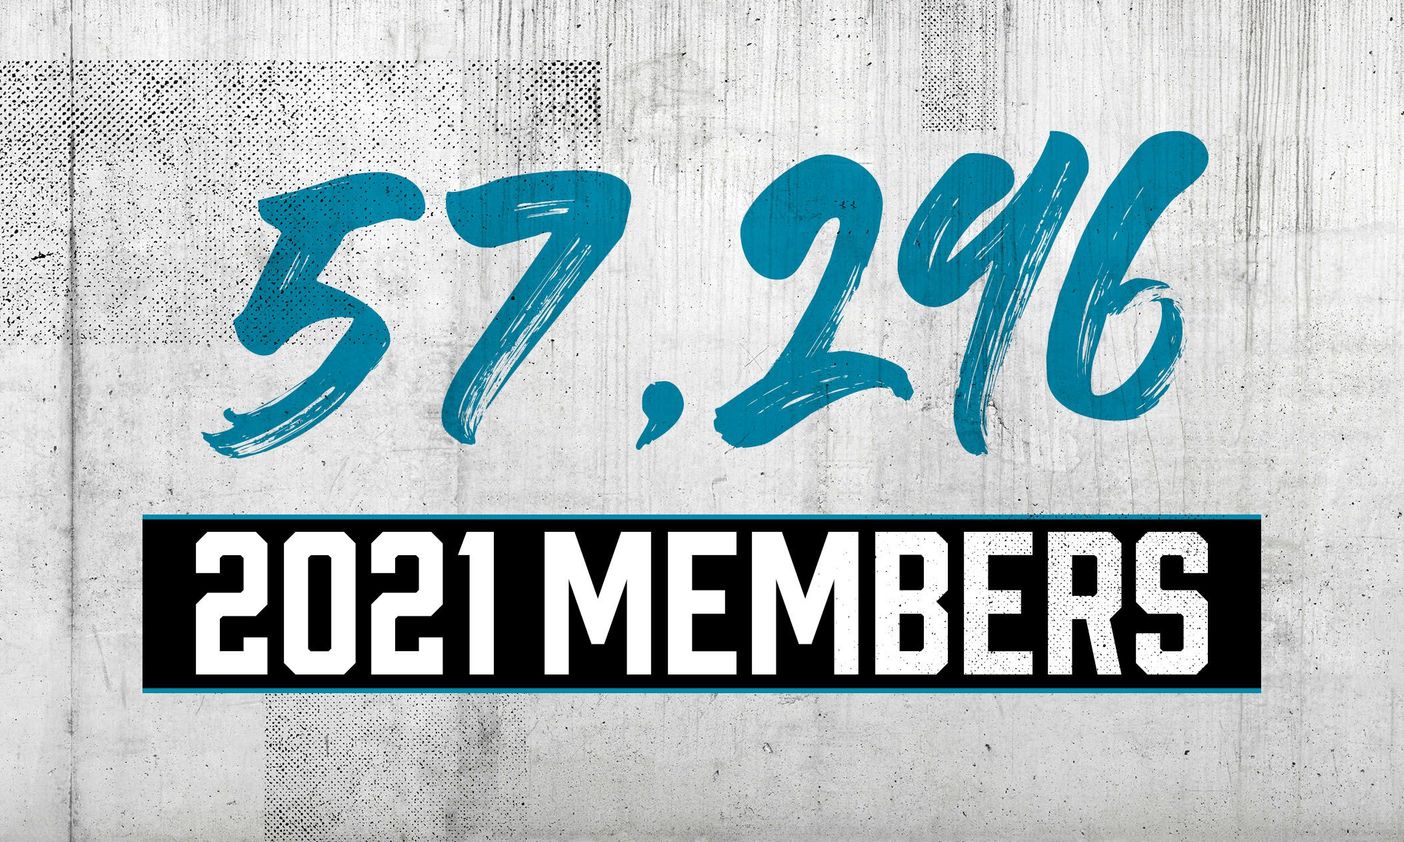 Membership-Number-10-May.jpg